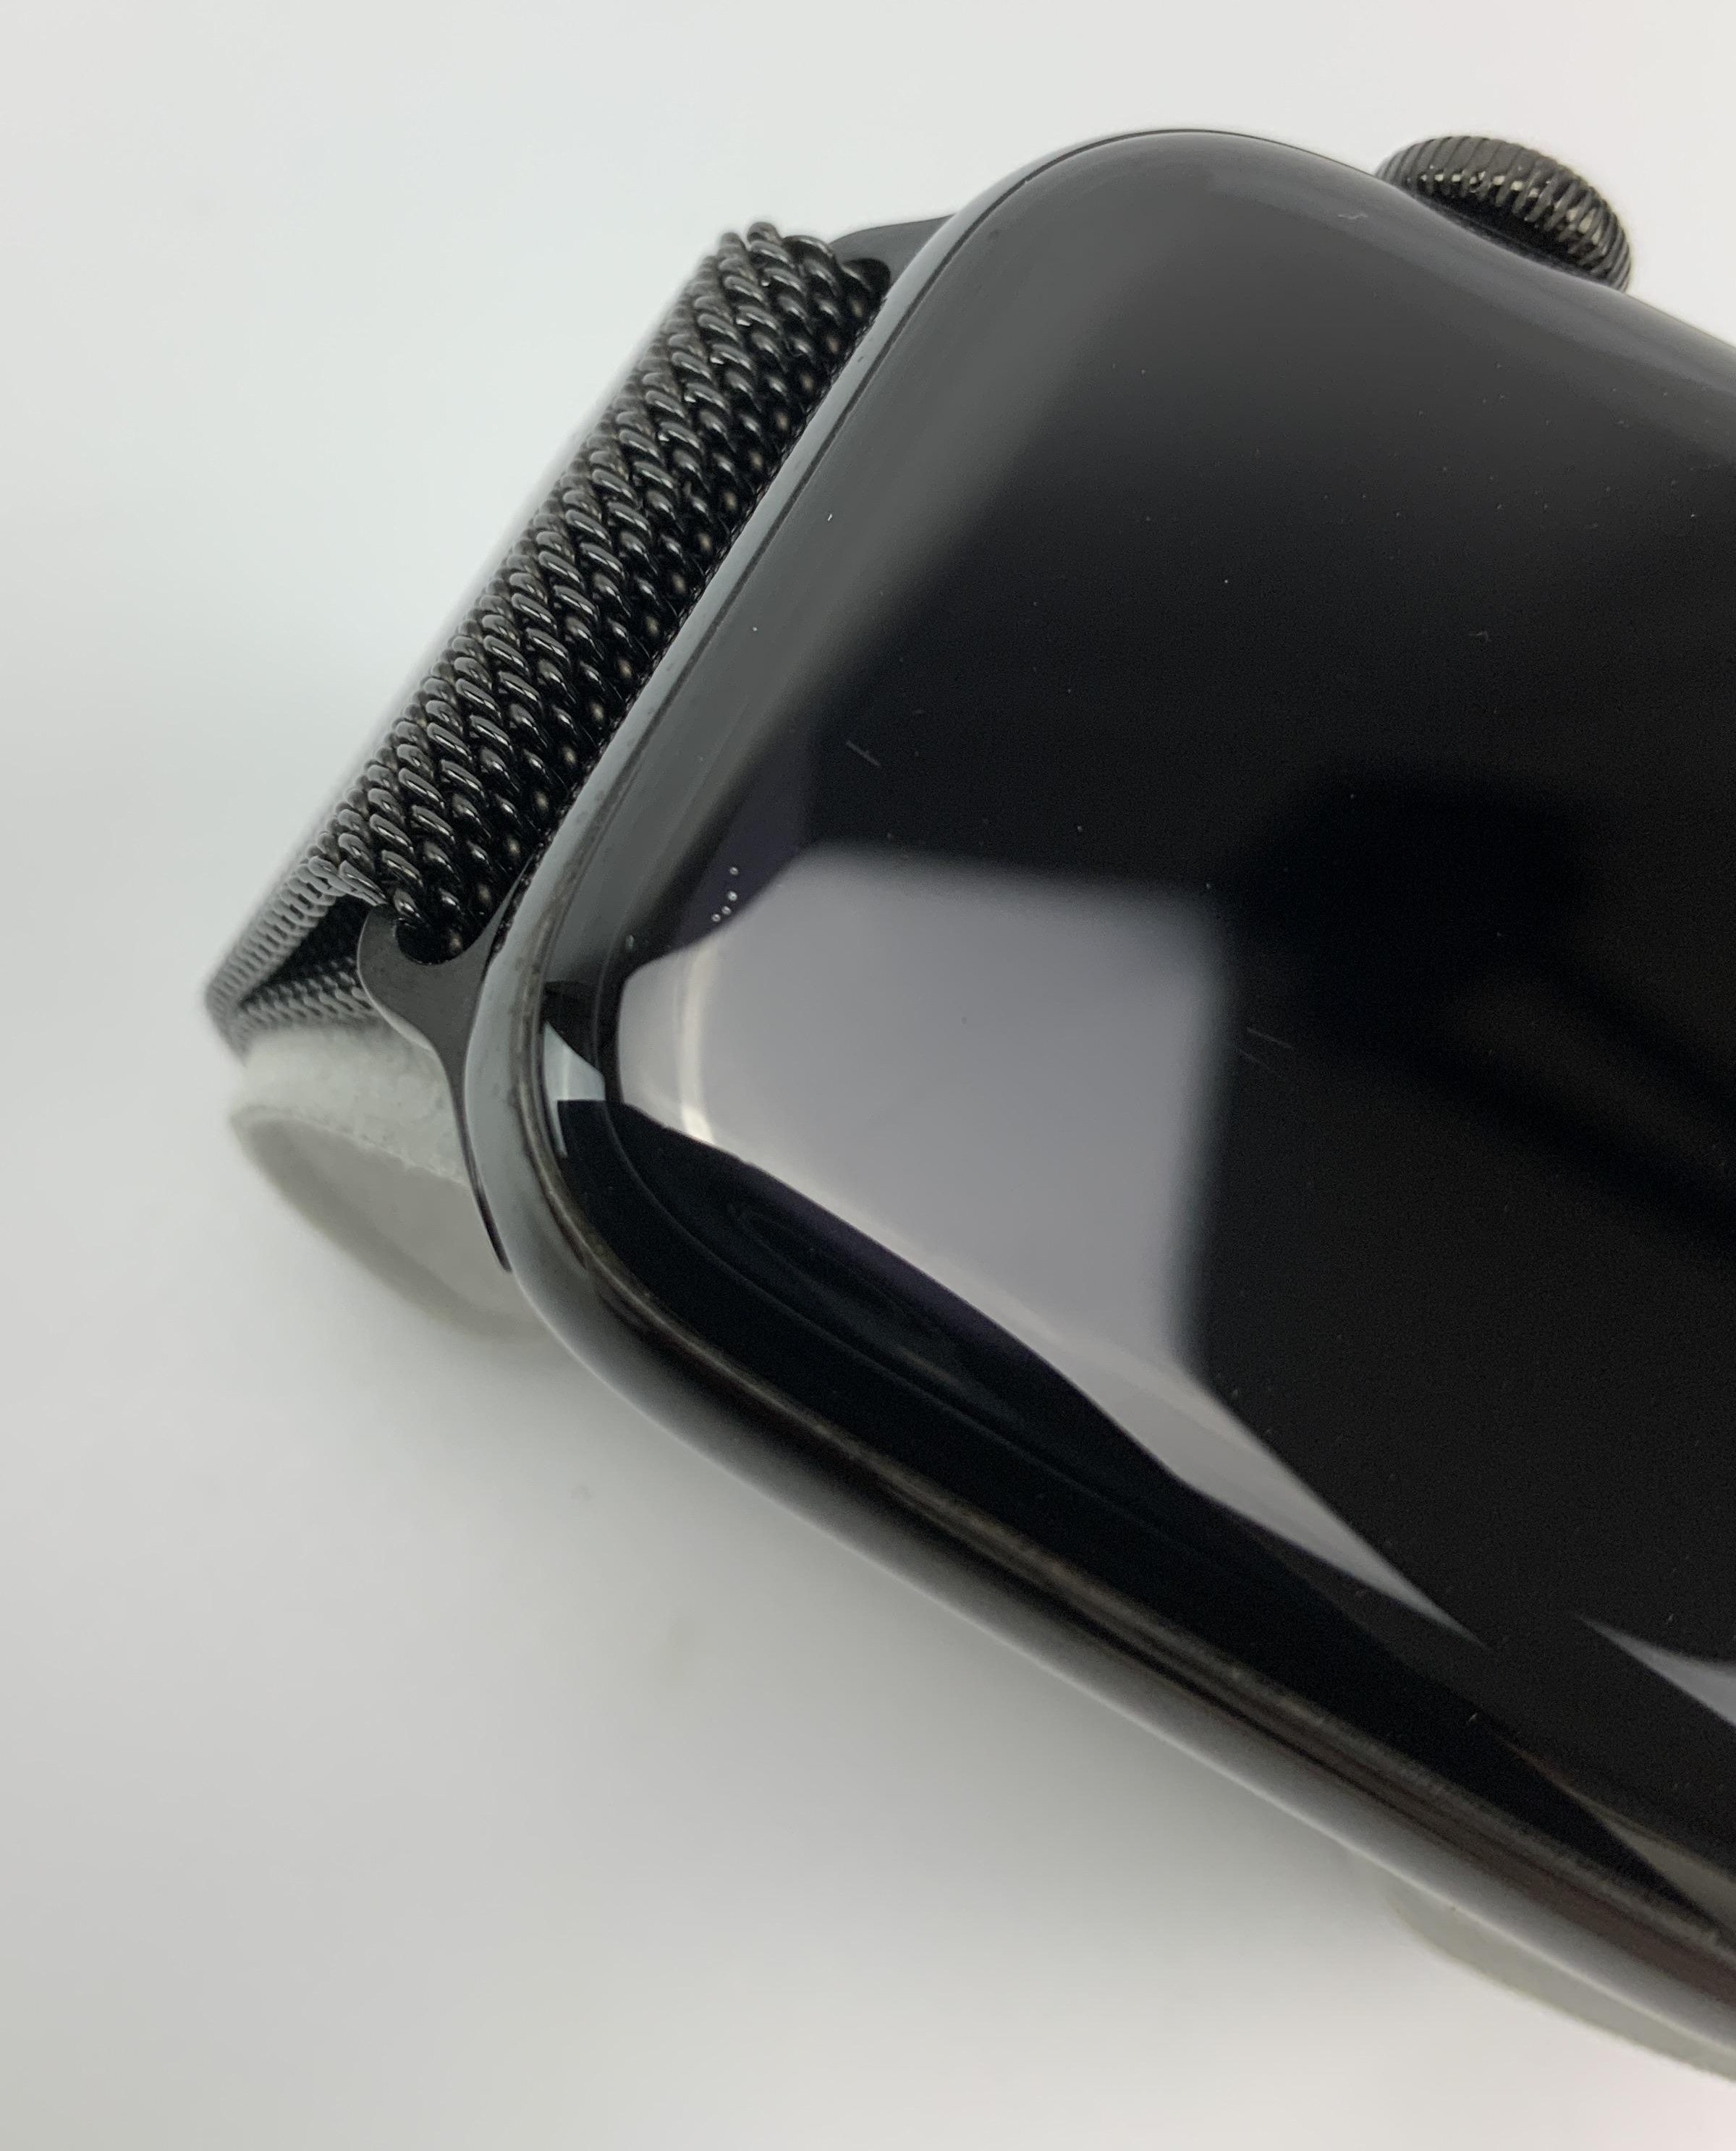 Watch Series 4 Steel Cellular (44mm), Space Black, Space Black Milanese Loop, immagine 4